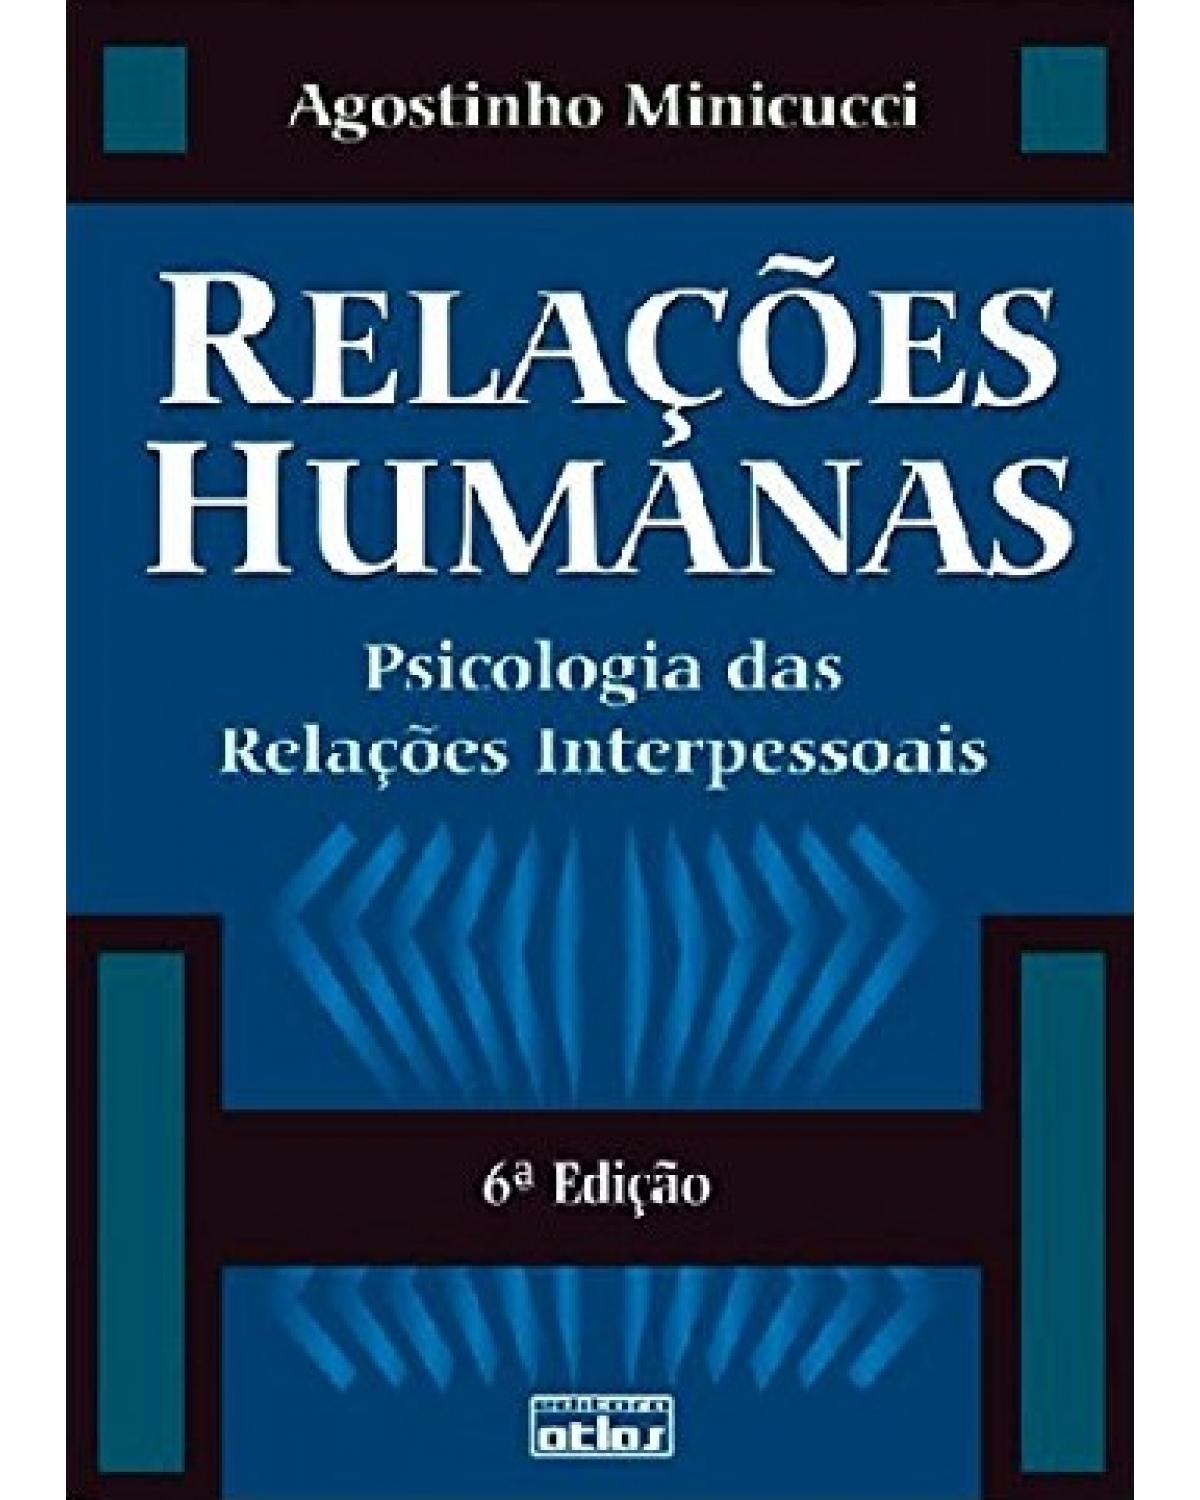 Relações humanas - Psicologia das relações interpessoais - 6ª Edição | 2001